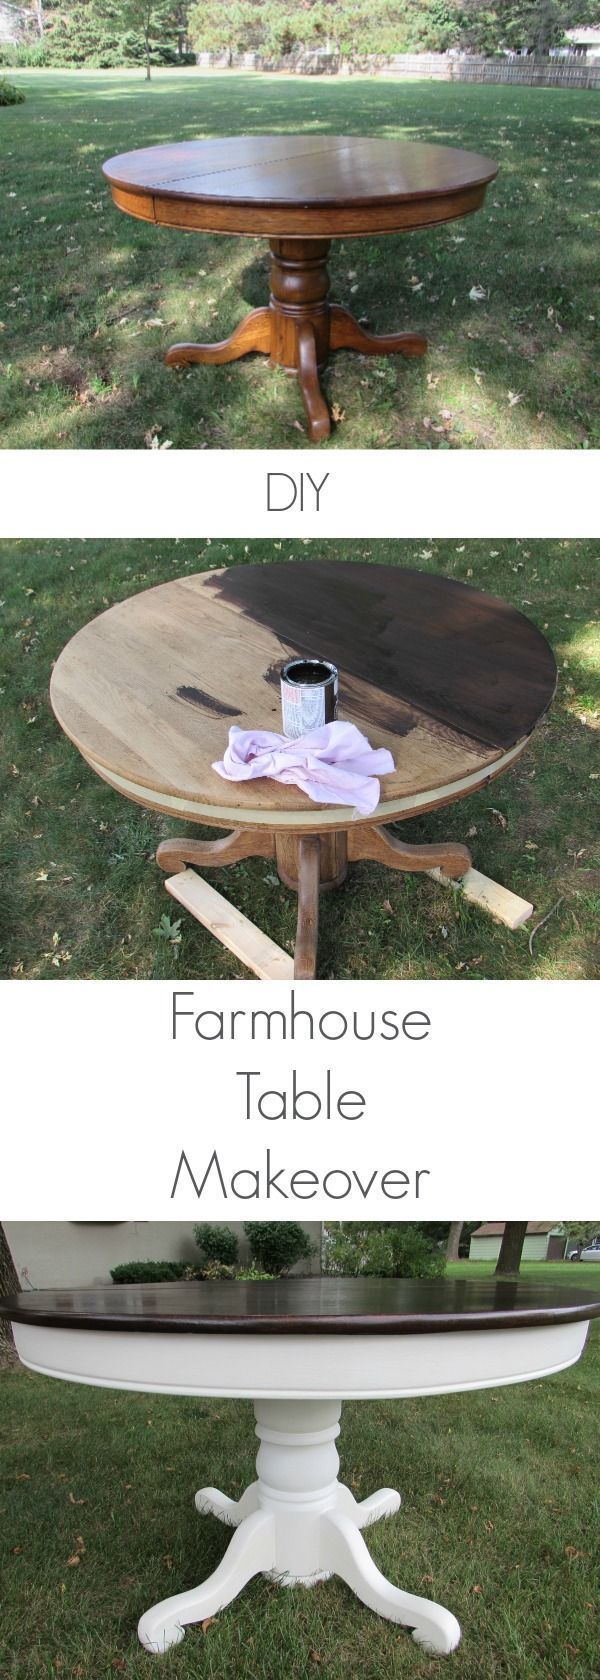 DIY Farmhouse Table: Turn Your Table Into A Farmhouse Table - DIY Farmhouse Table: Turn Your Table Into A Farmhouse Table -   21 diy Table upcycle ideas